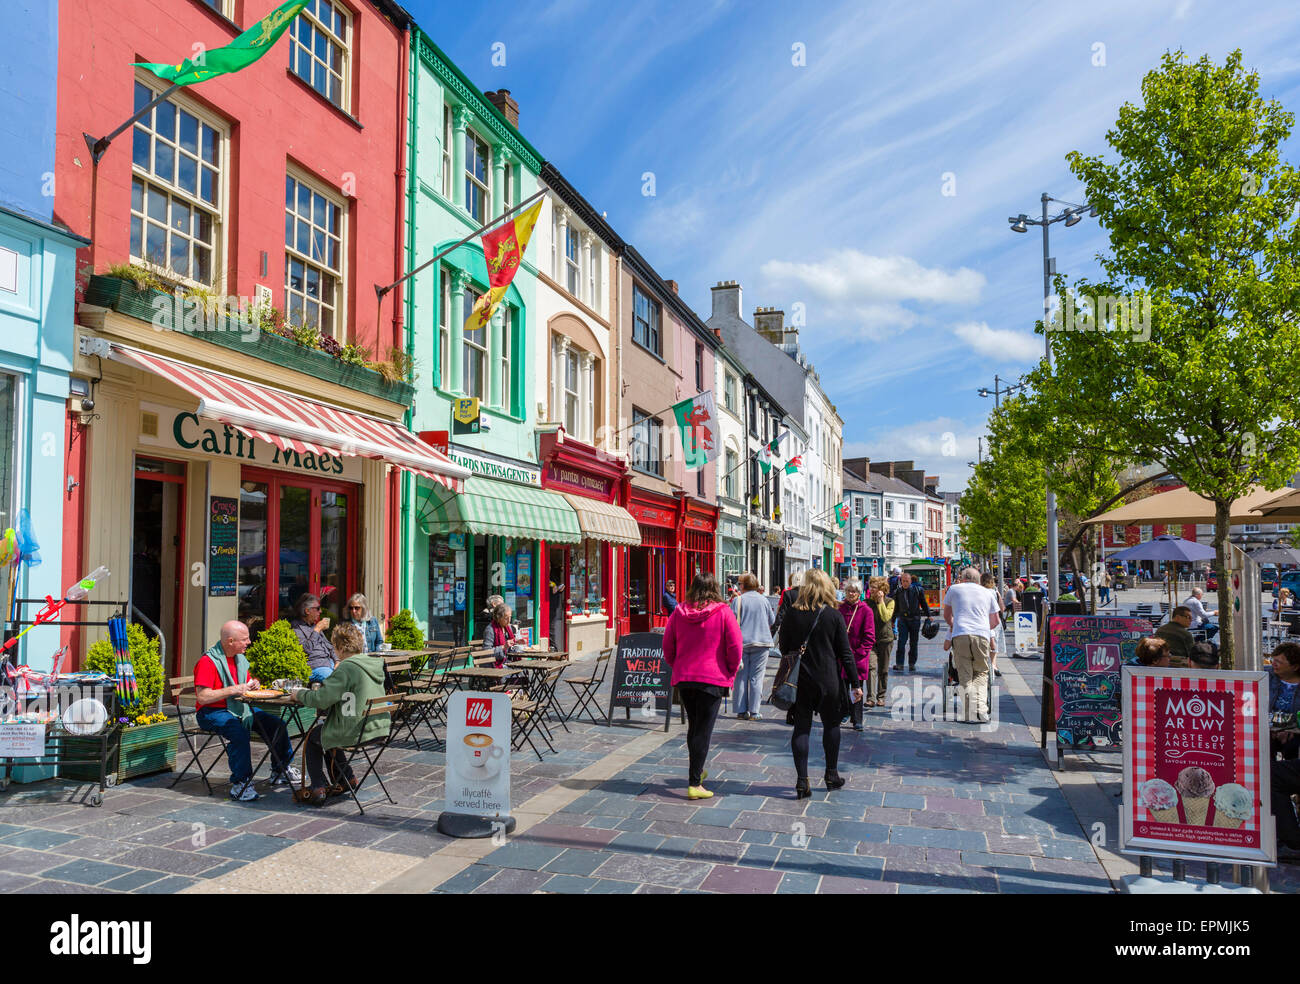 Commerces, bars et cafés sur place du Château, Caernarfon, Gwynedd, Pays de Galles, Royaume-Uni Banque D'Images